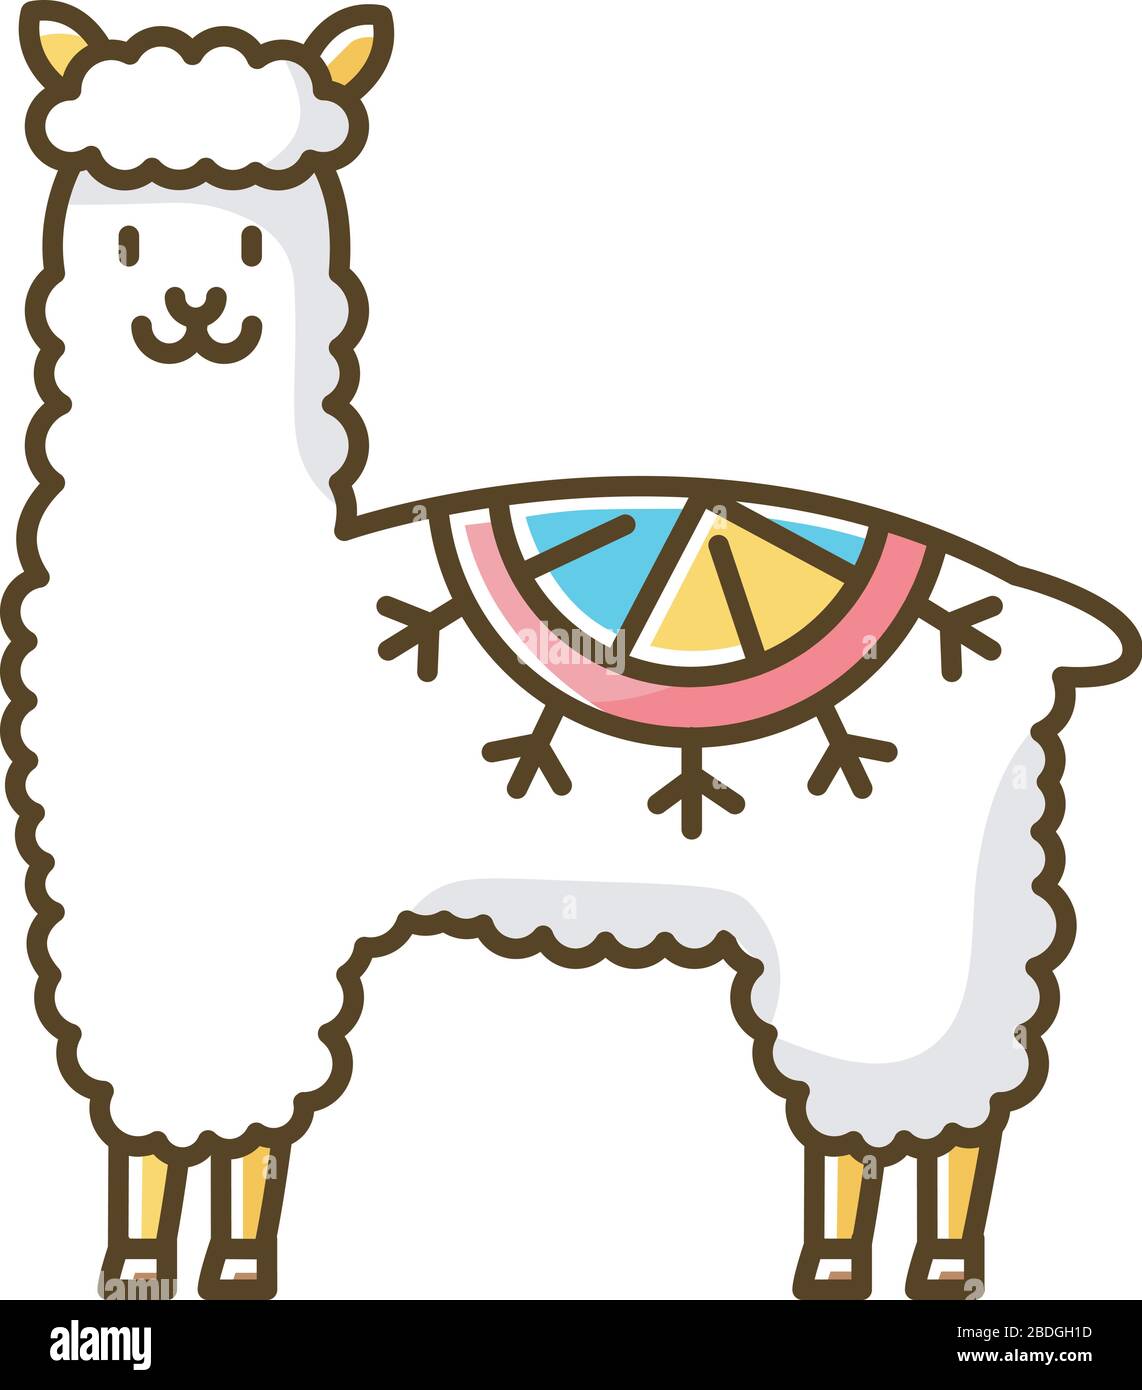 Icono de color RGB de alpaca. Llama de lana coqueta domesticada peruana. Adorable camélido sudamericano. Animal rumiante con capucha procedente de los Andes. Divertido como camello Ilustración del Vector